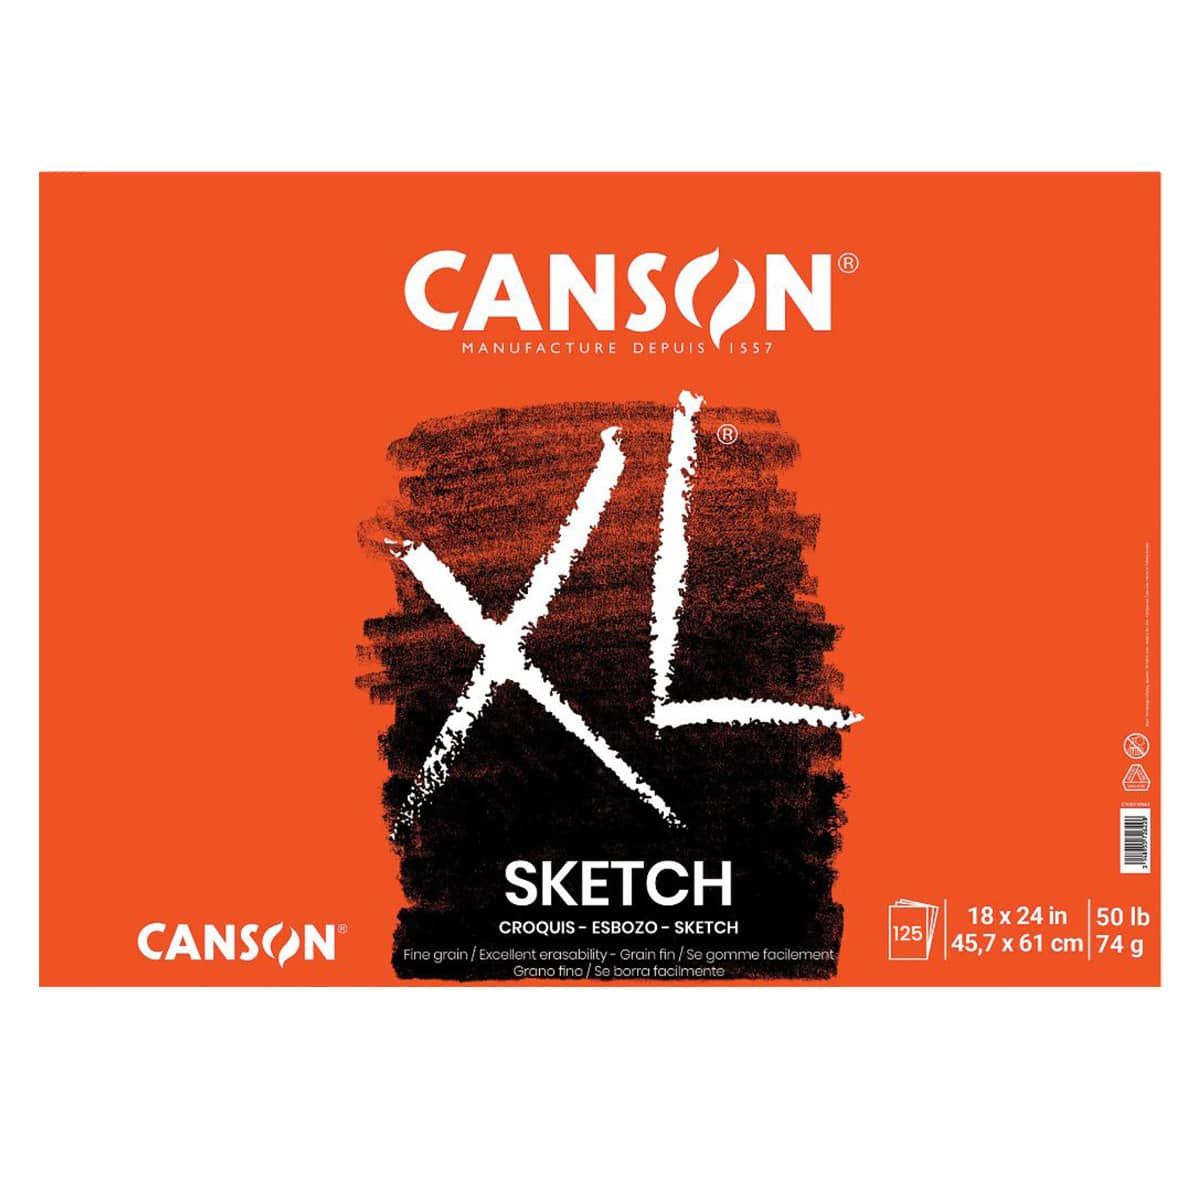 Canson XL Sketch Pad - Glue Bound 18"x24"

